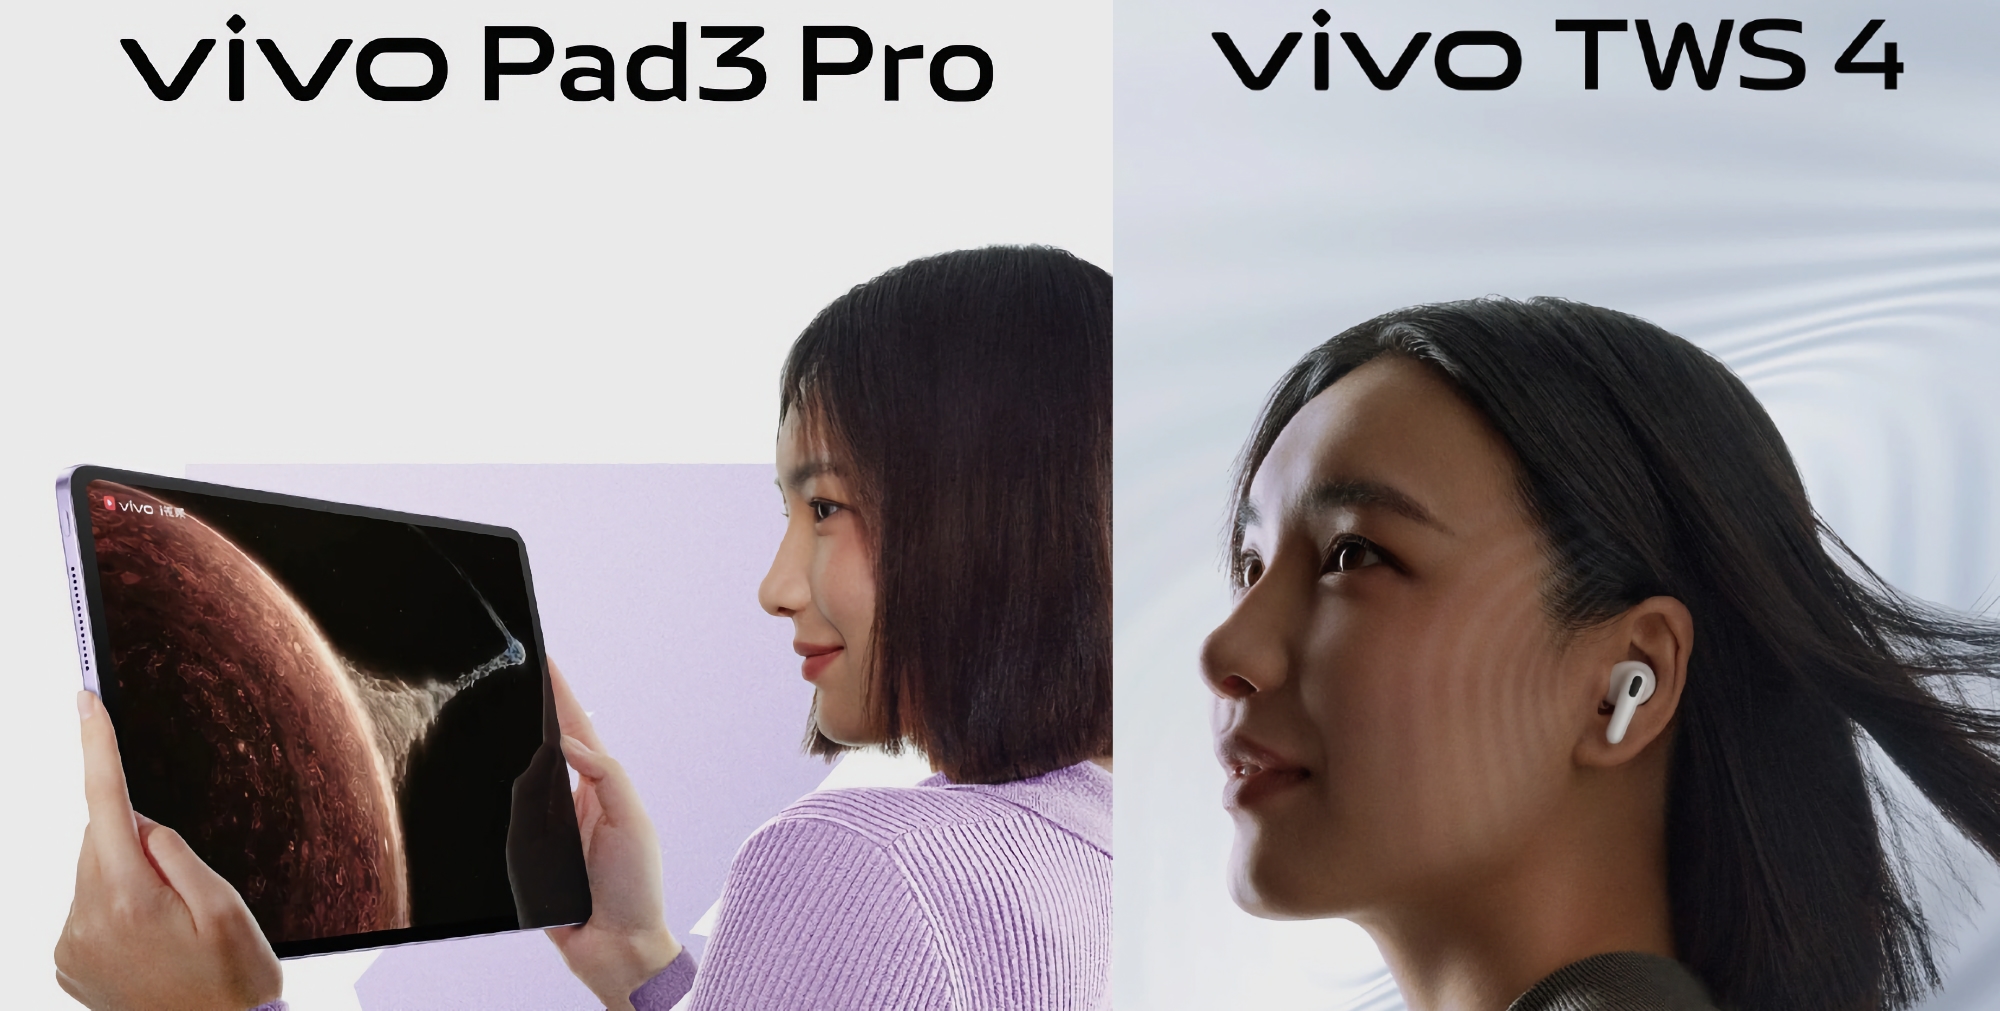 Nicht nur faltbare X Fold 3-Smartphones: vivo zeigt am 26. März auch das Pad 3 Pro-Tablet und TWS-Kopfhörer im Design der AirPods Pro